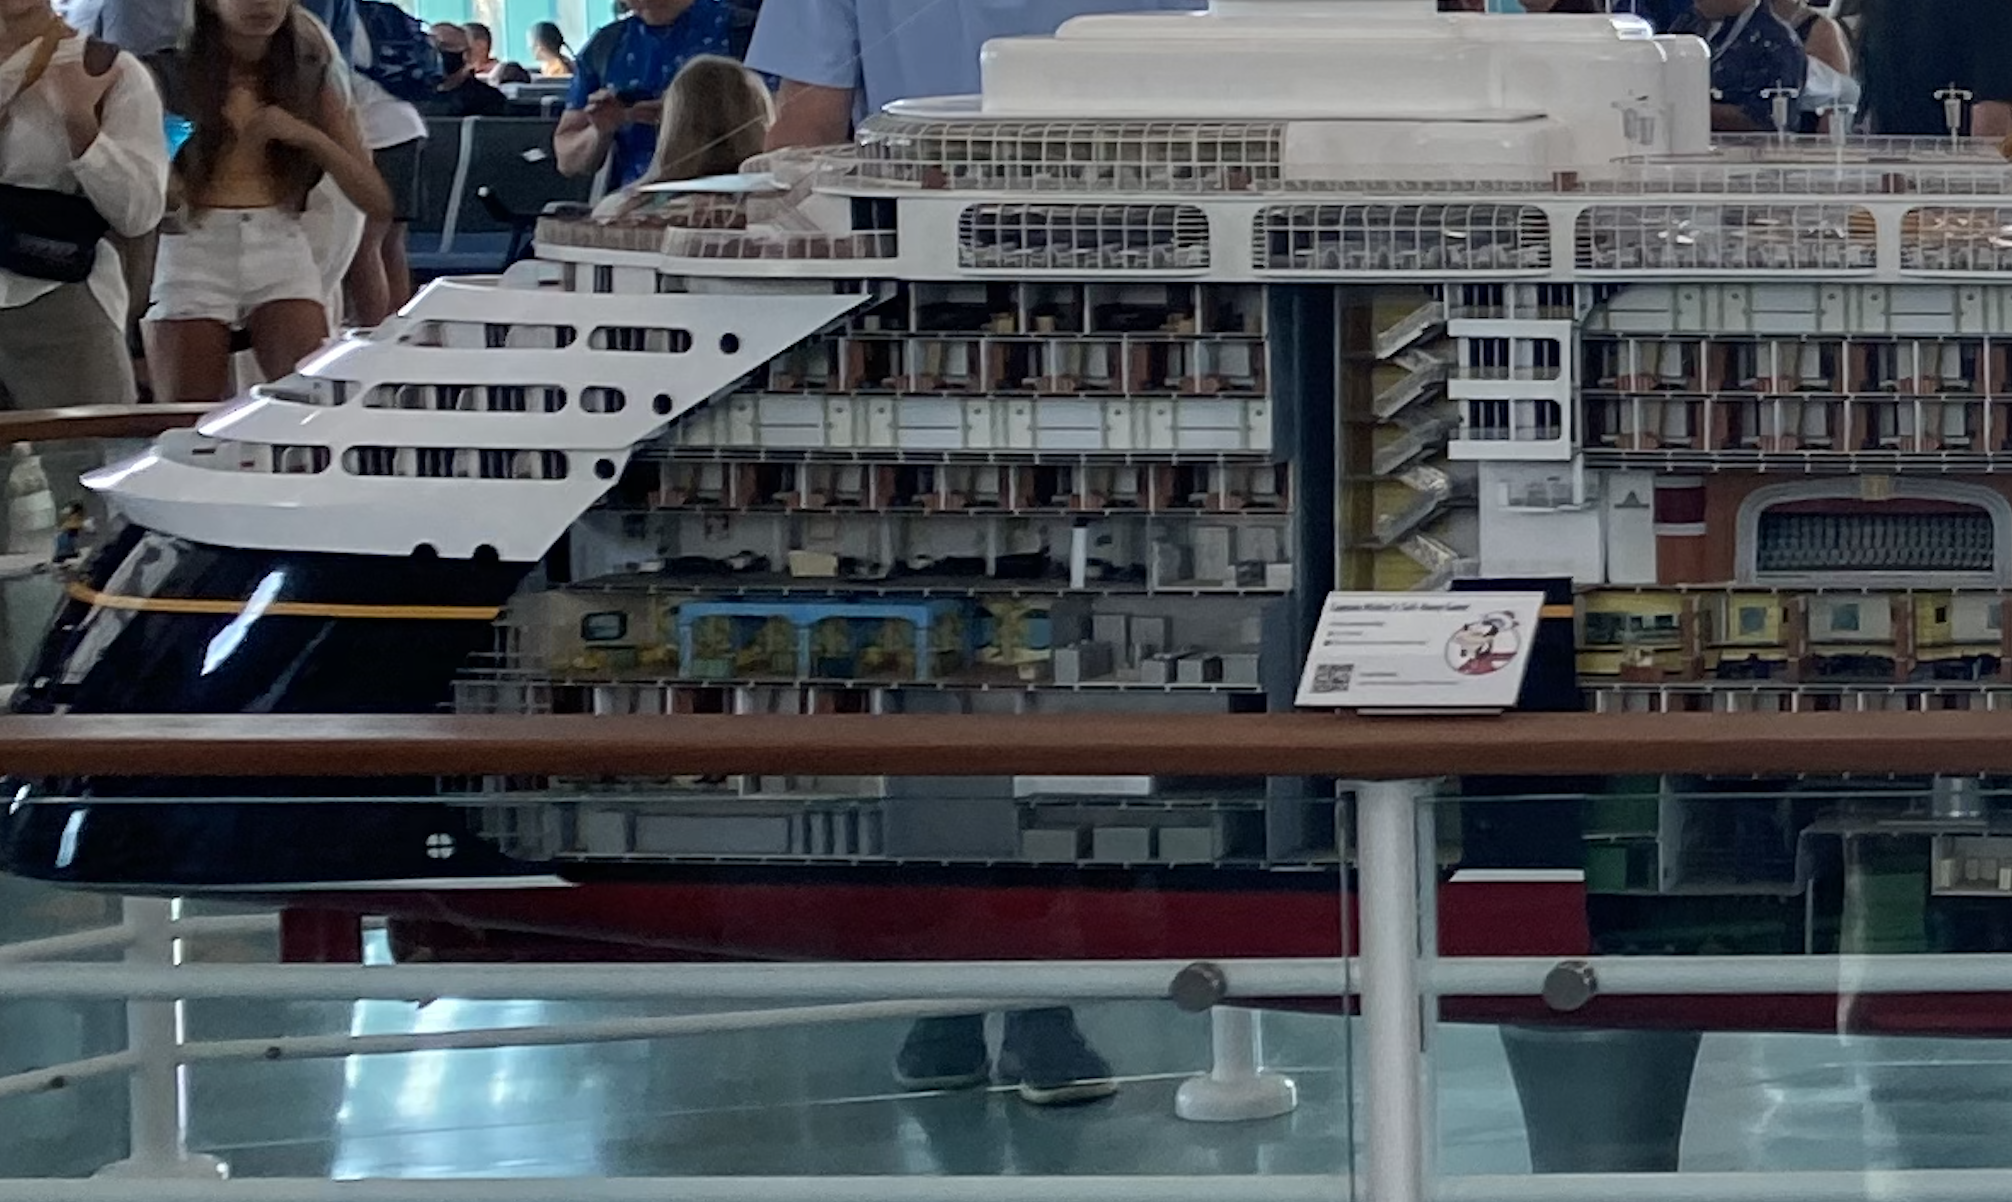 A model of a Disney cruise ship